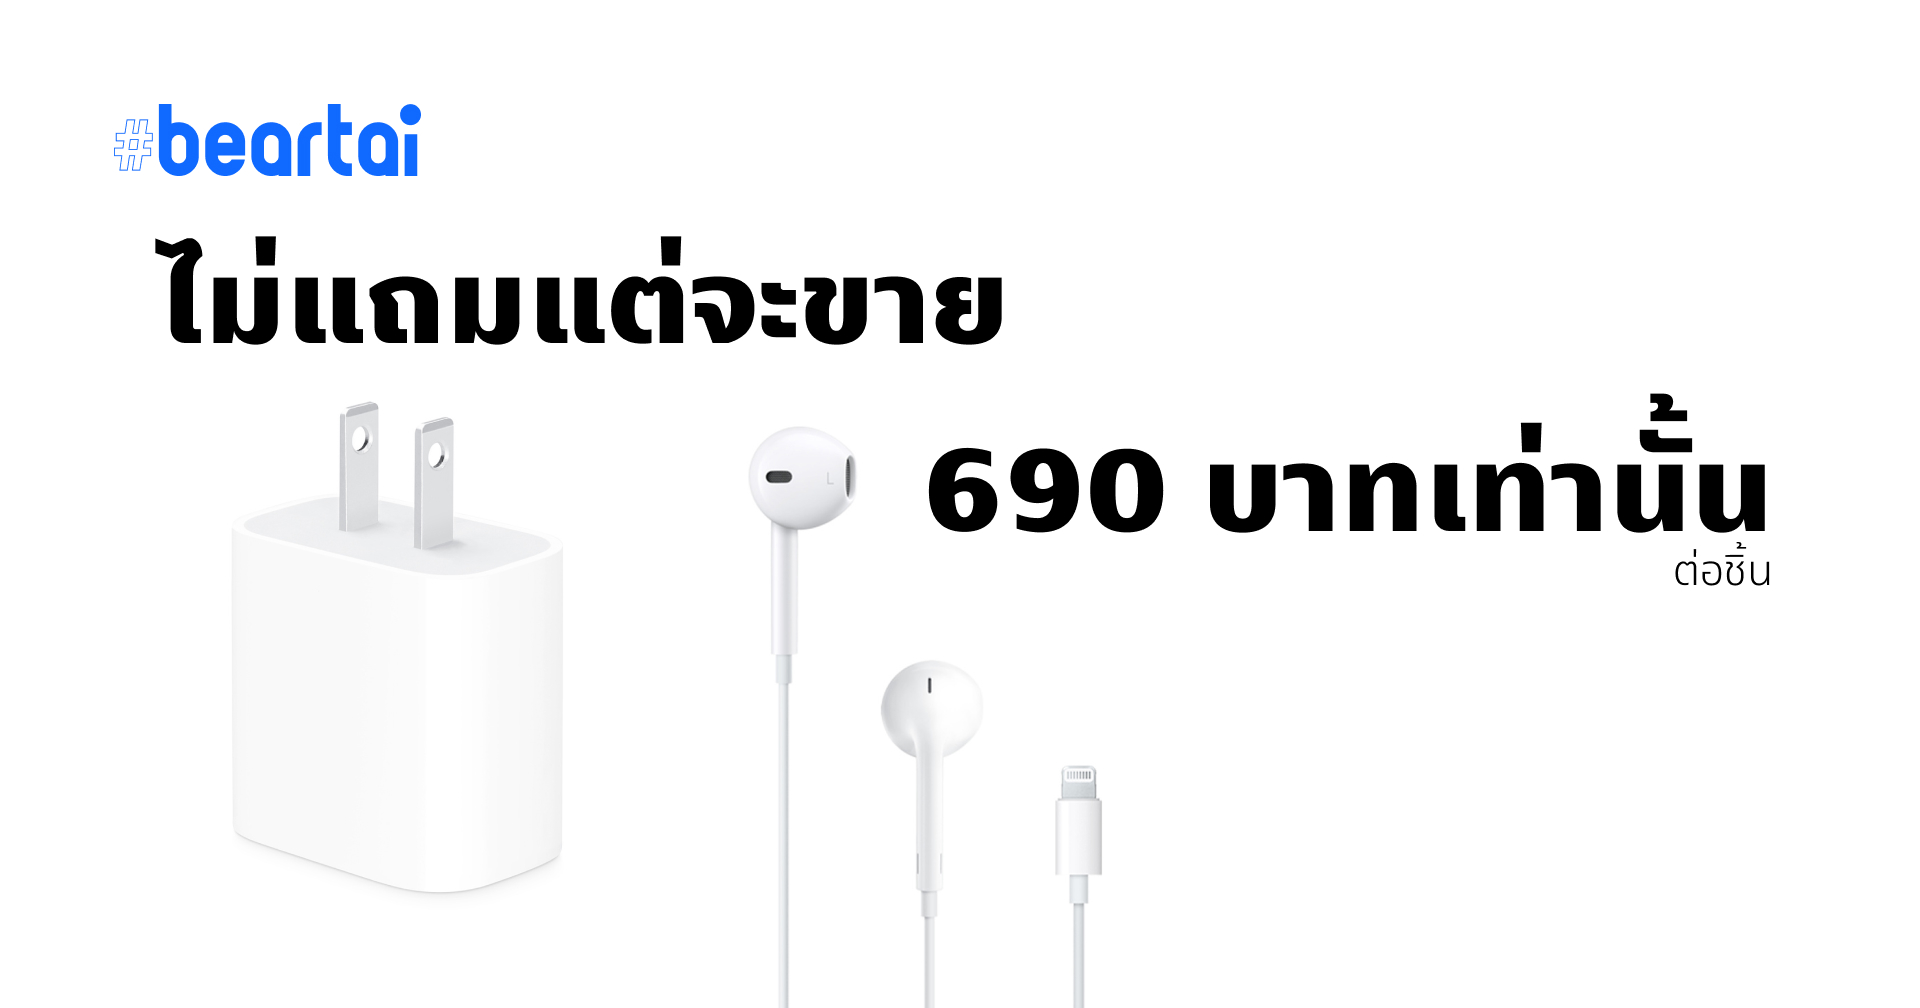 เราไม่แถมแต่เราขาย!! Apple ลดราคา EarPods เหลือ 690 บาท พร้อมขายอะแดปเตอร์ 20W ในราคาเดียวกัน